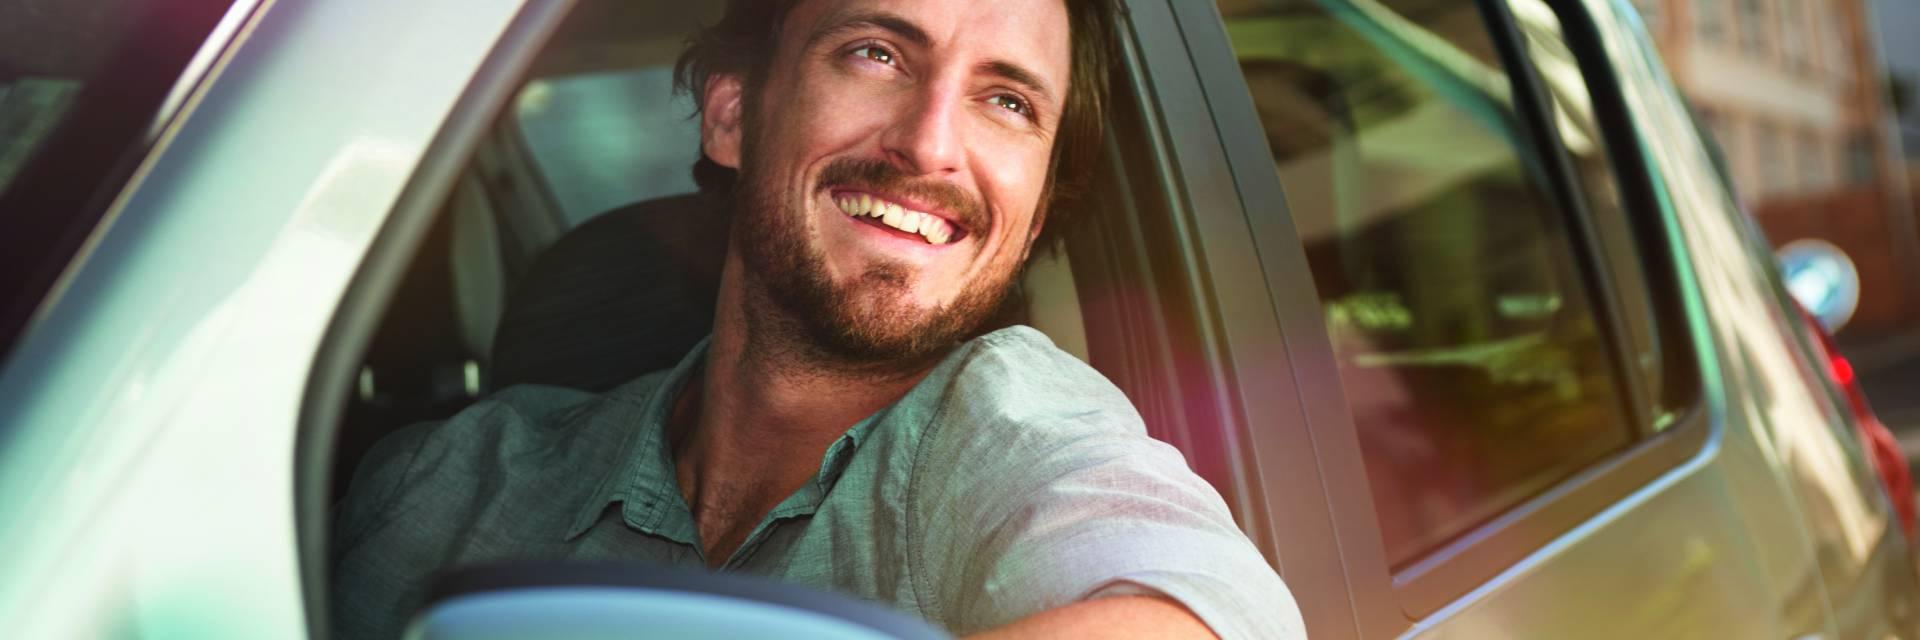 Homme souriant dans sa voiture a effectué un devis assurance auto